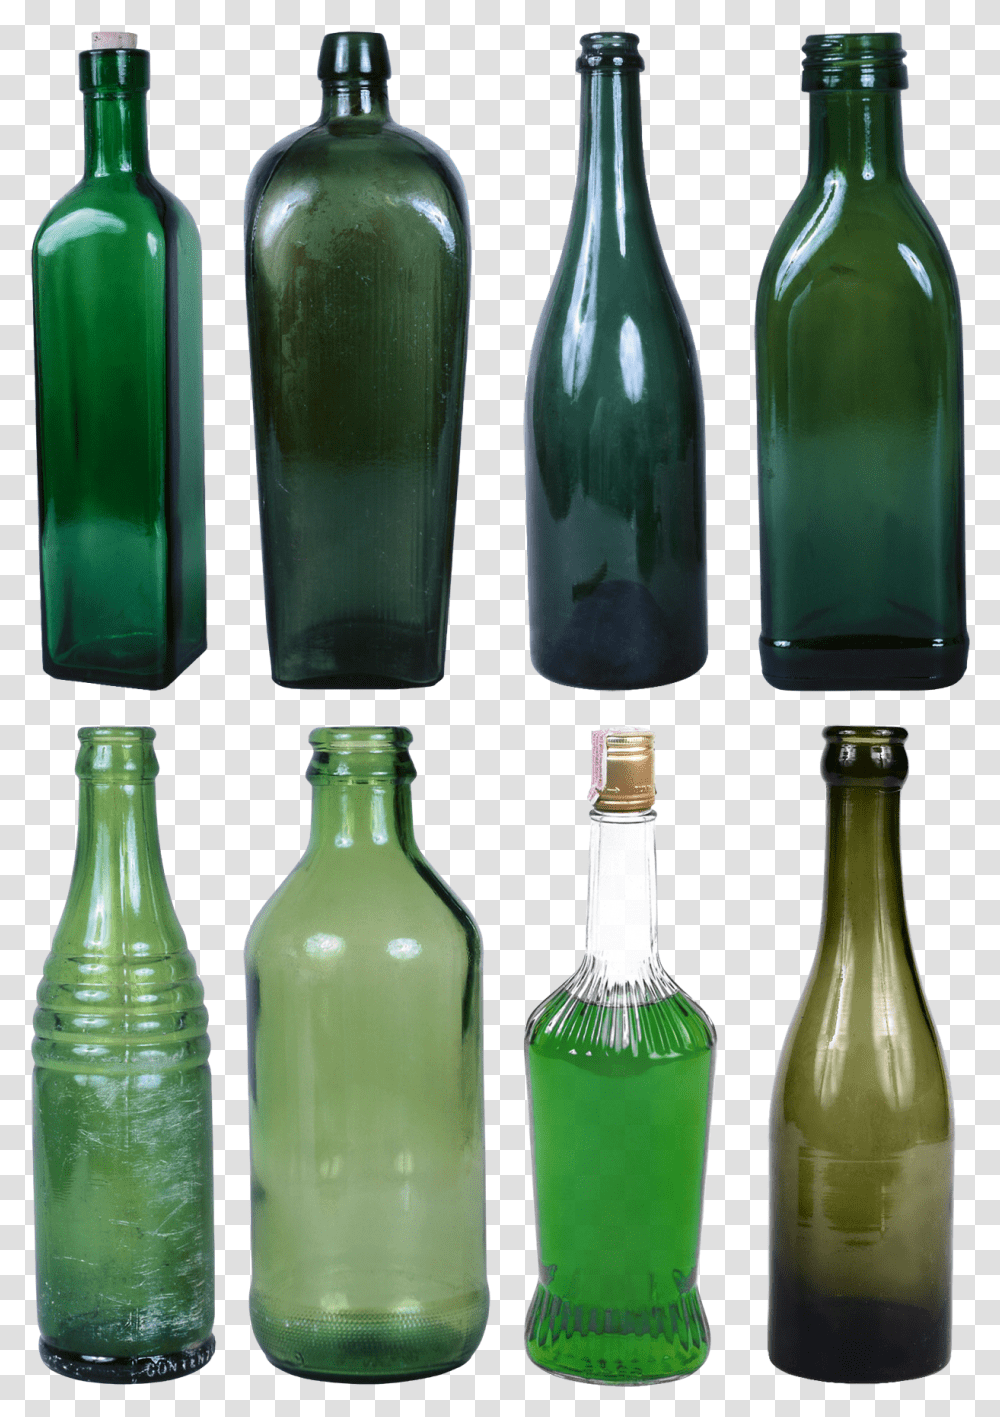 Soda Green Bottle Glass Bottles, Liquor, Alcohol, Beverage, Absinthe Transparent Png